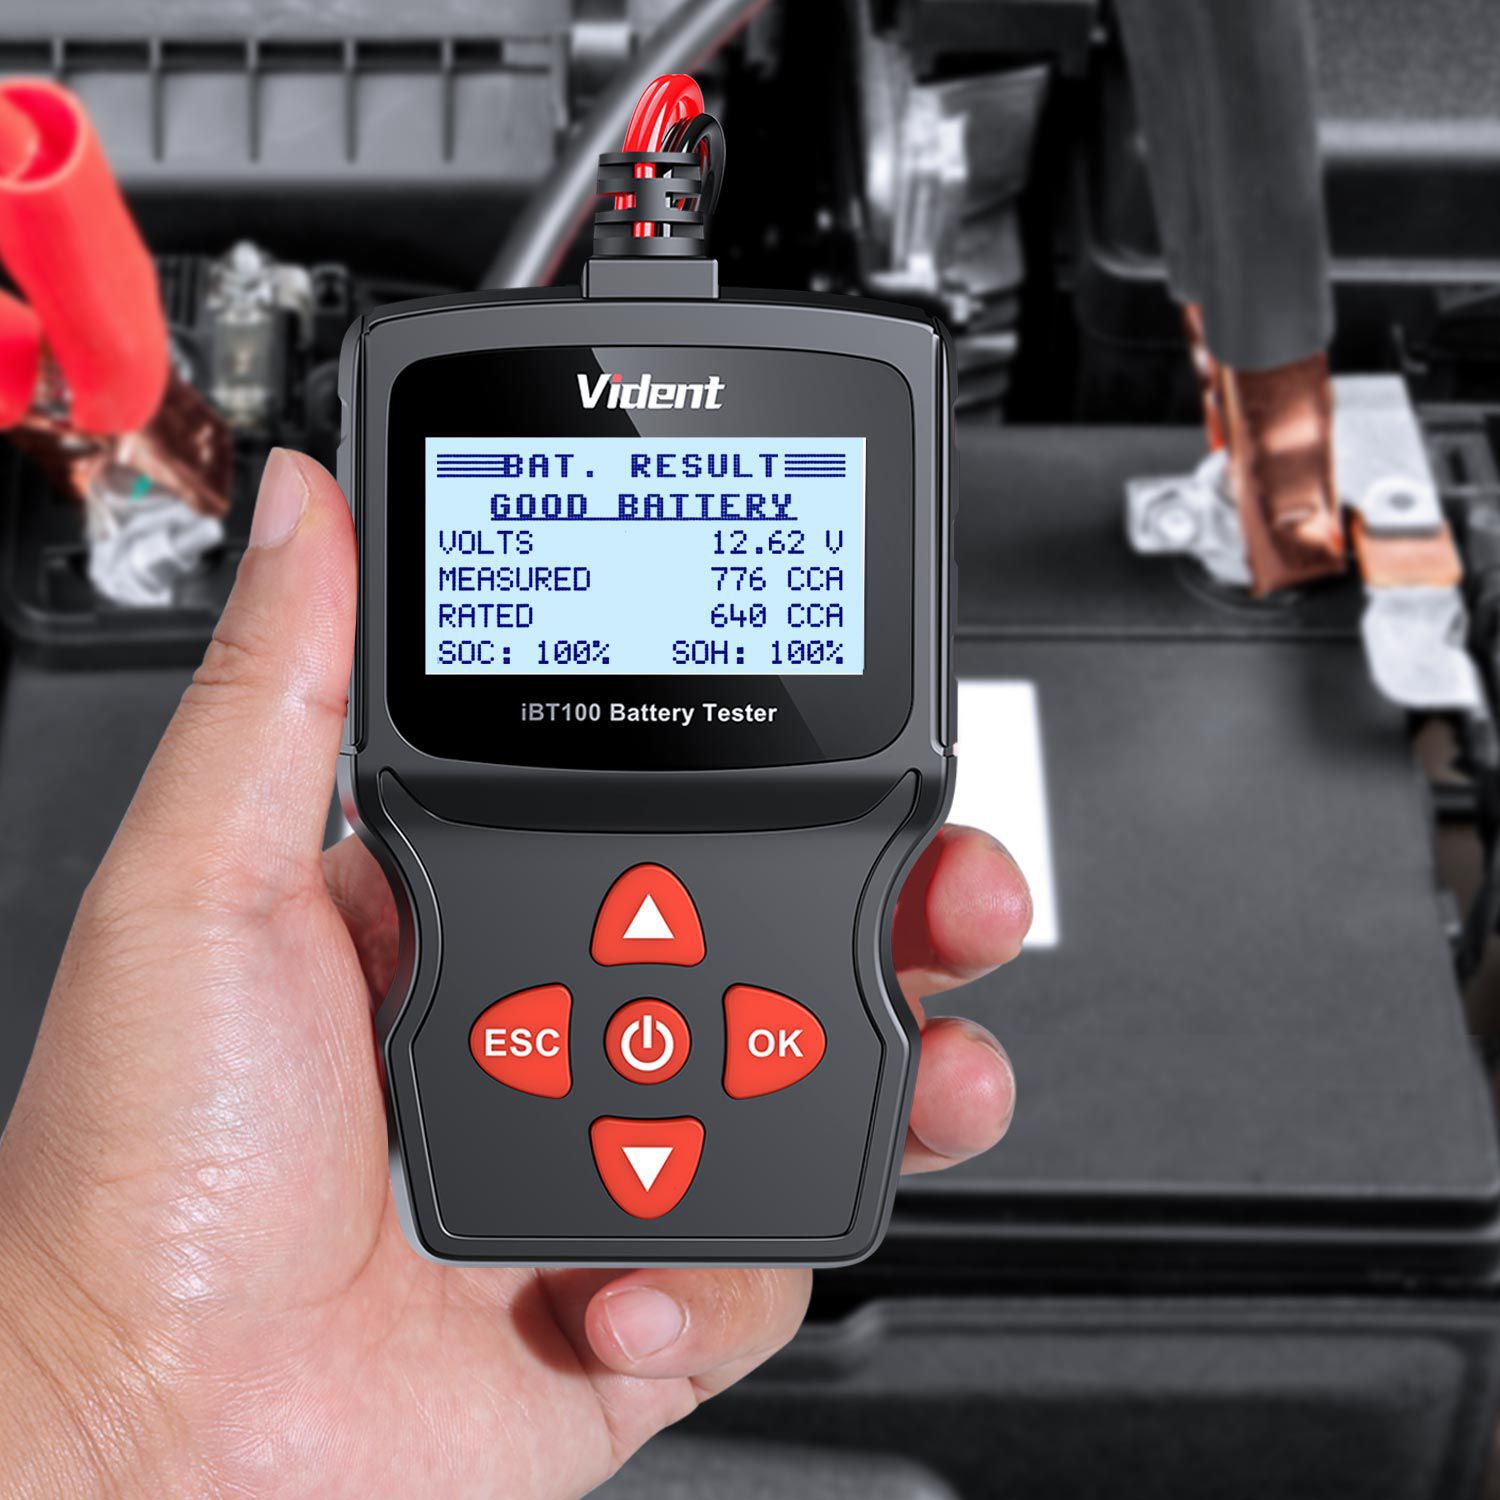 анализатор аккумуляторных батарей Vident iBT100 12V, применяемый в жидкостных погружениях, AGM, GEL 100 - 1100CCA